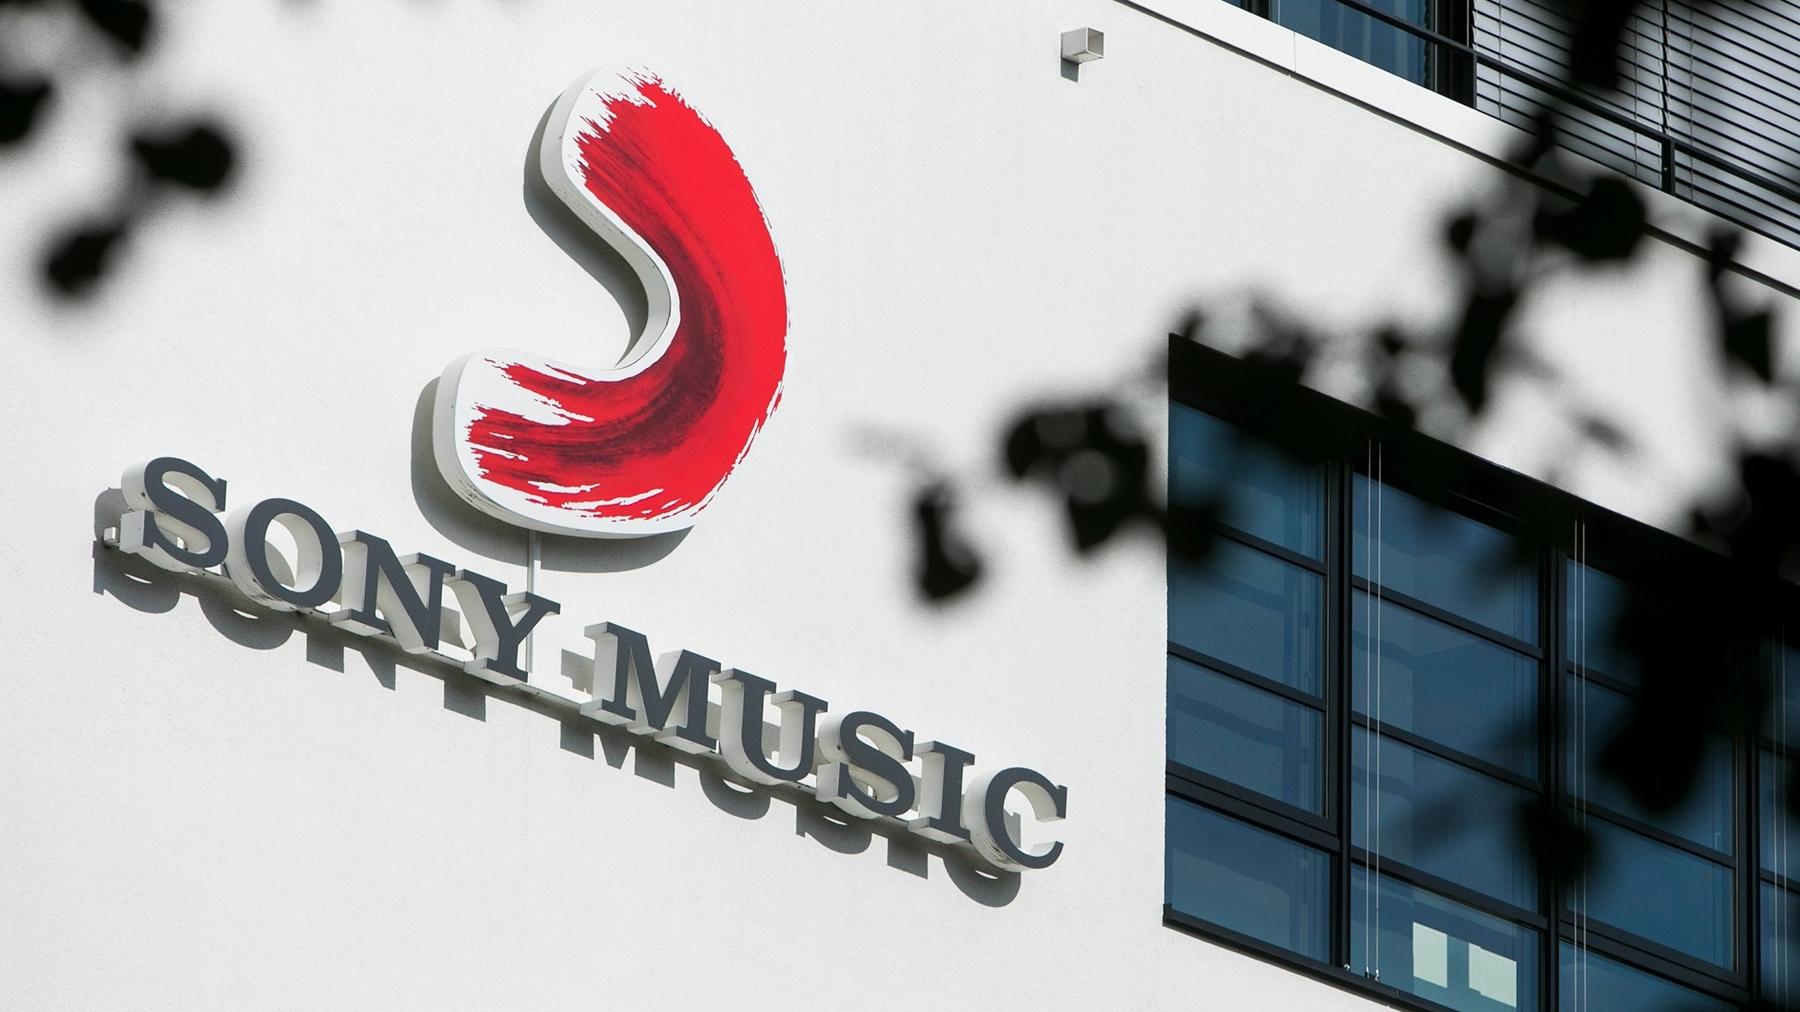 Sony Music полностью уходит из России, спустя 6 месяцев после приостановки деятельности в стране